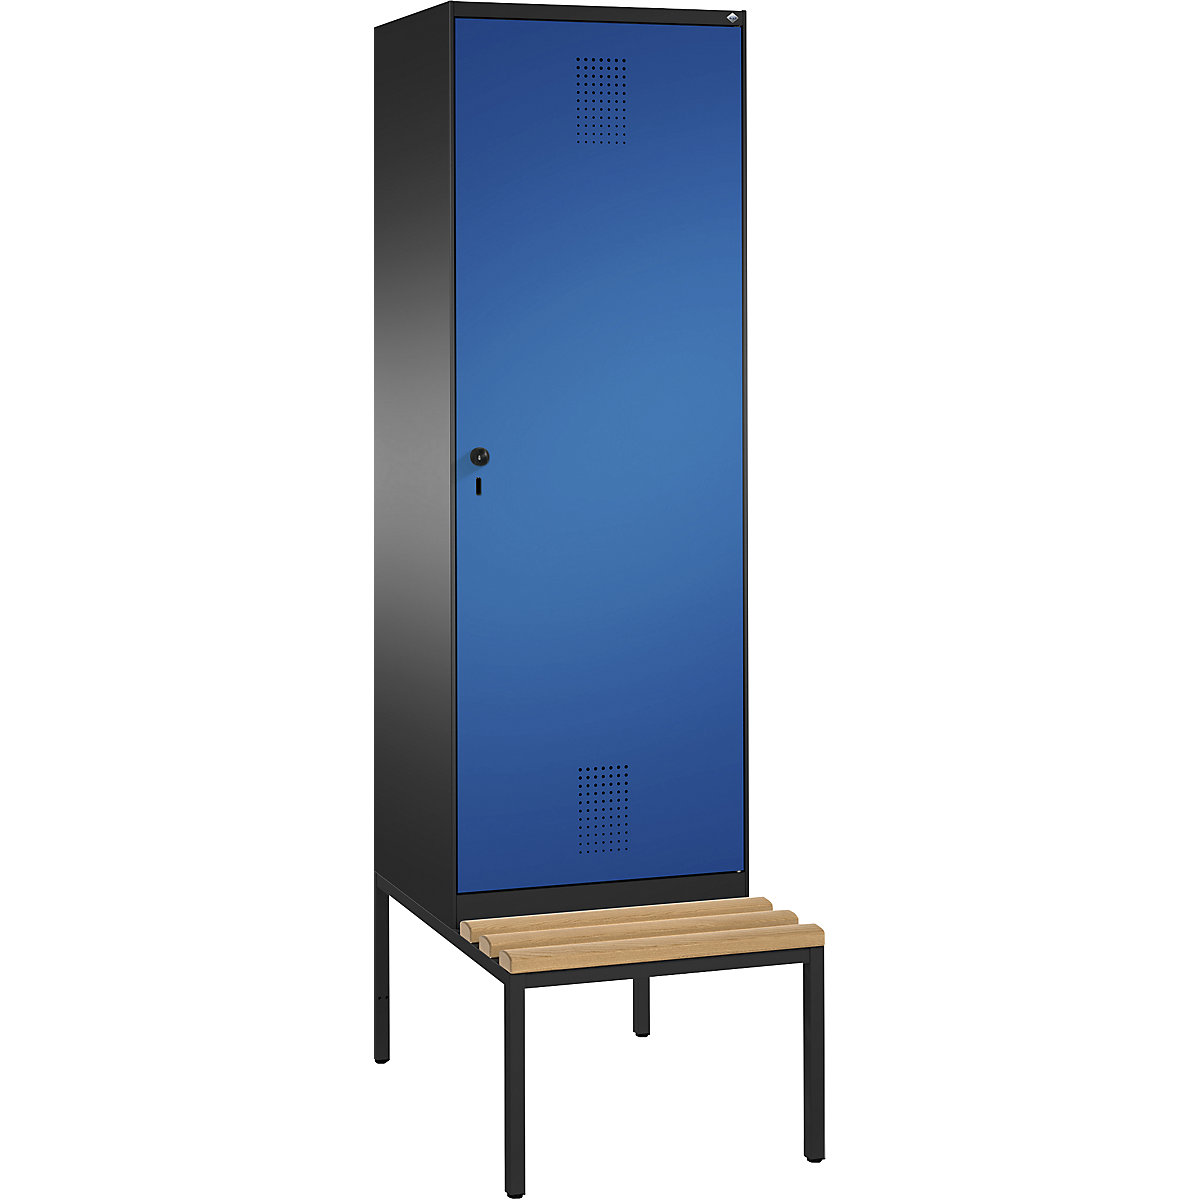 Šatní skříň s lavicí EVOLO s dveřmi přes 2 oddíly – C+P, 2 oddíly, 1 dveře, šířka oddílu 300 mm, černošedá / enciánová modrá-14